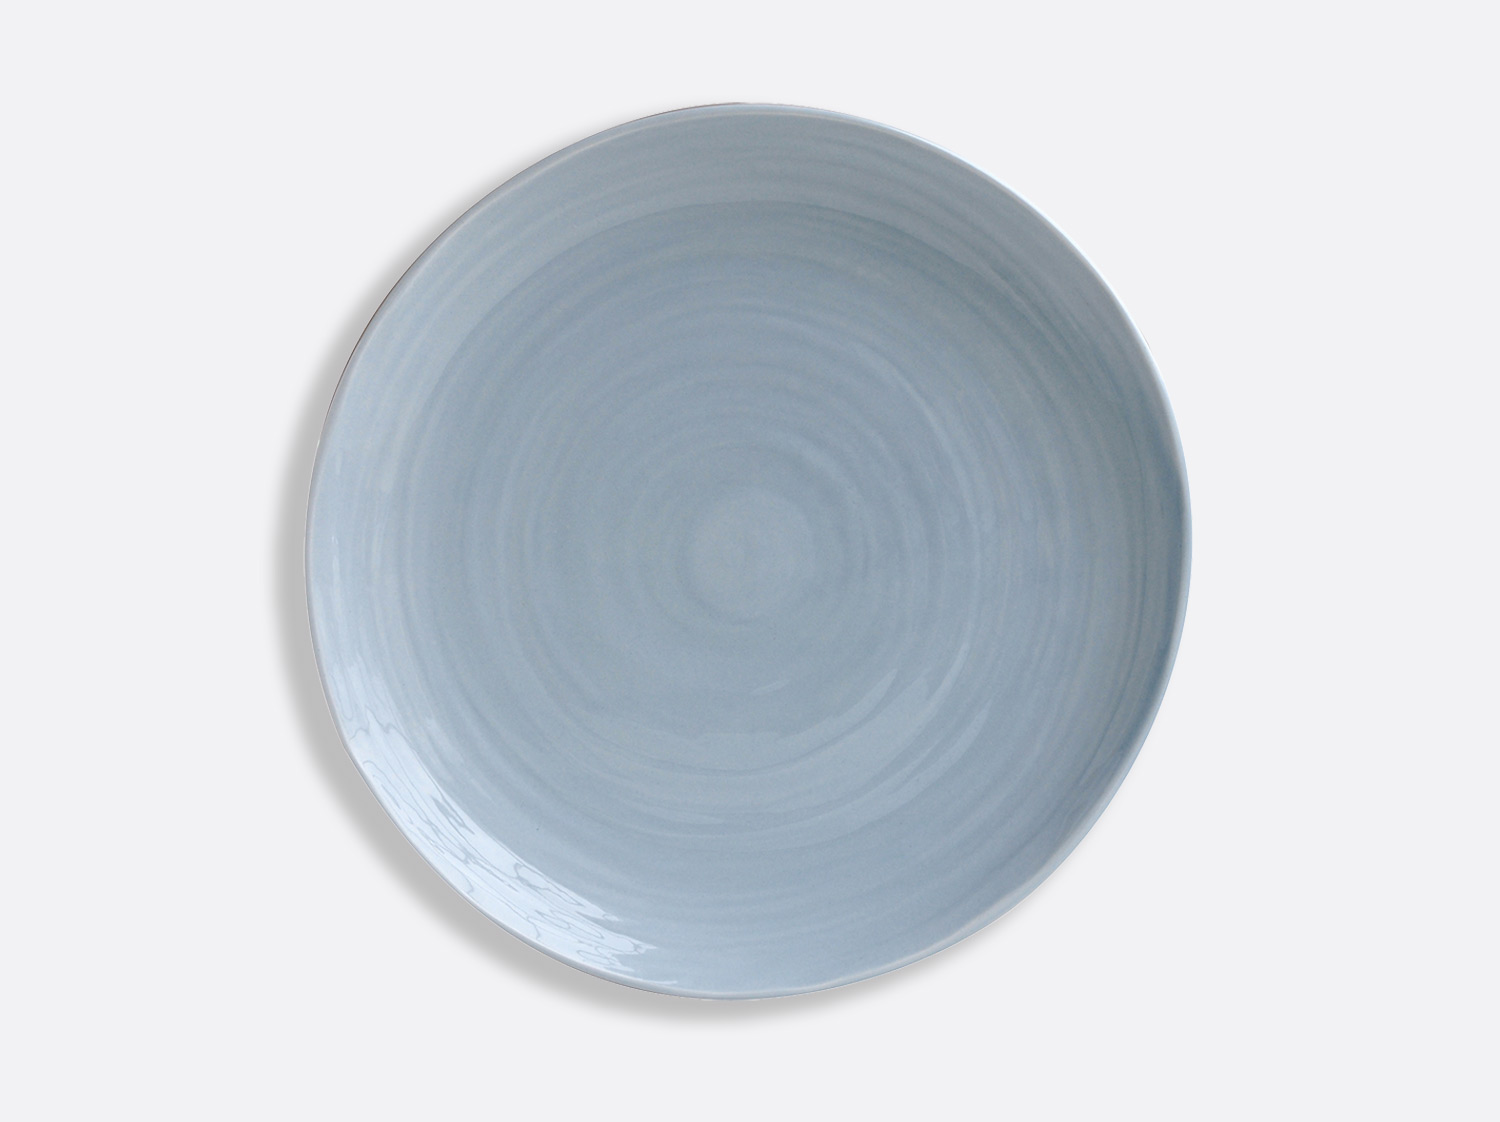 China Blue plate 10.6" of the collection Origine bleu | Bernardaud